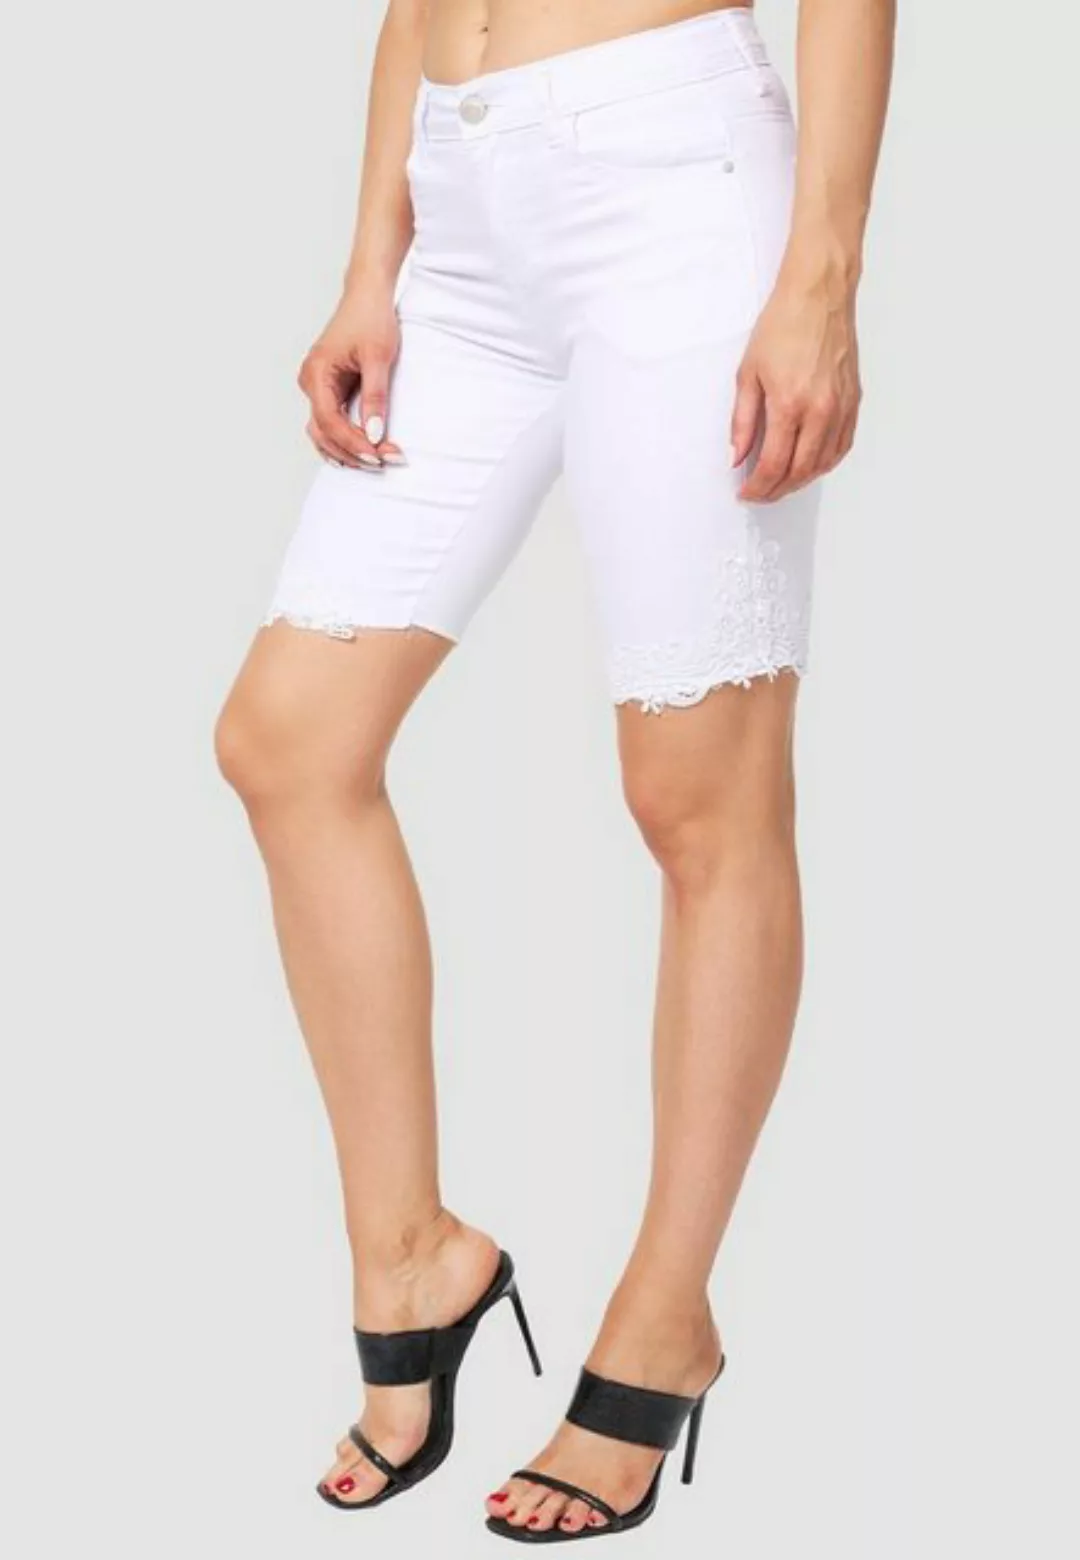 MiSS RJ Jeansshorts High Waist Denim Jeans Shorts Bermuda Stretch Hose mit günstig online kaufen